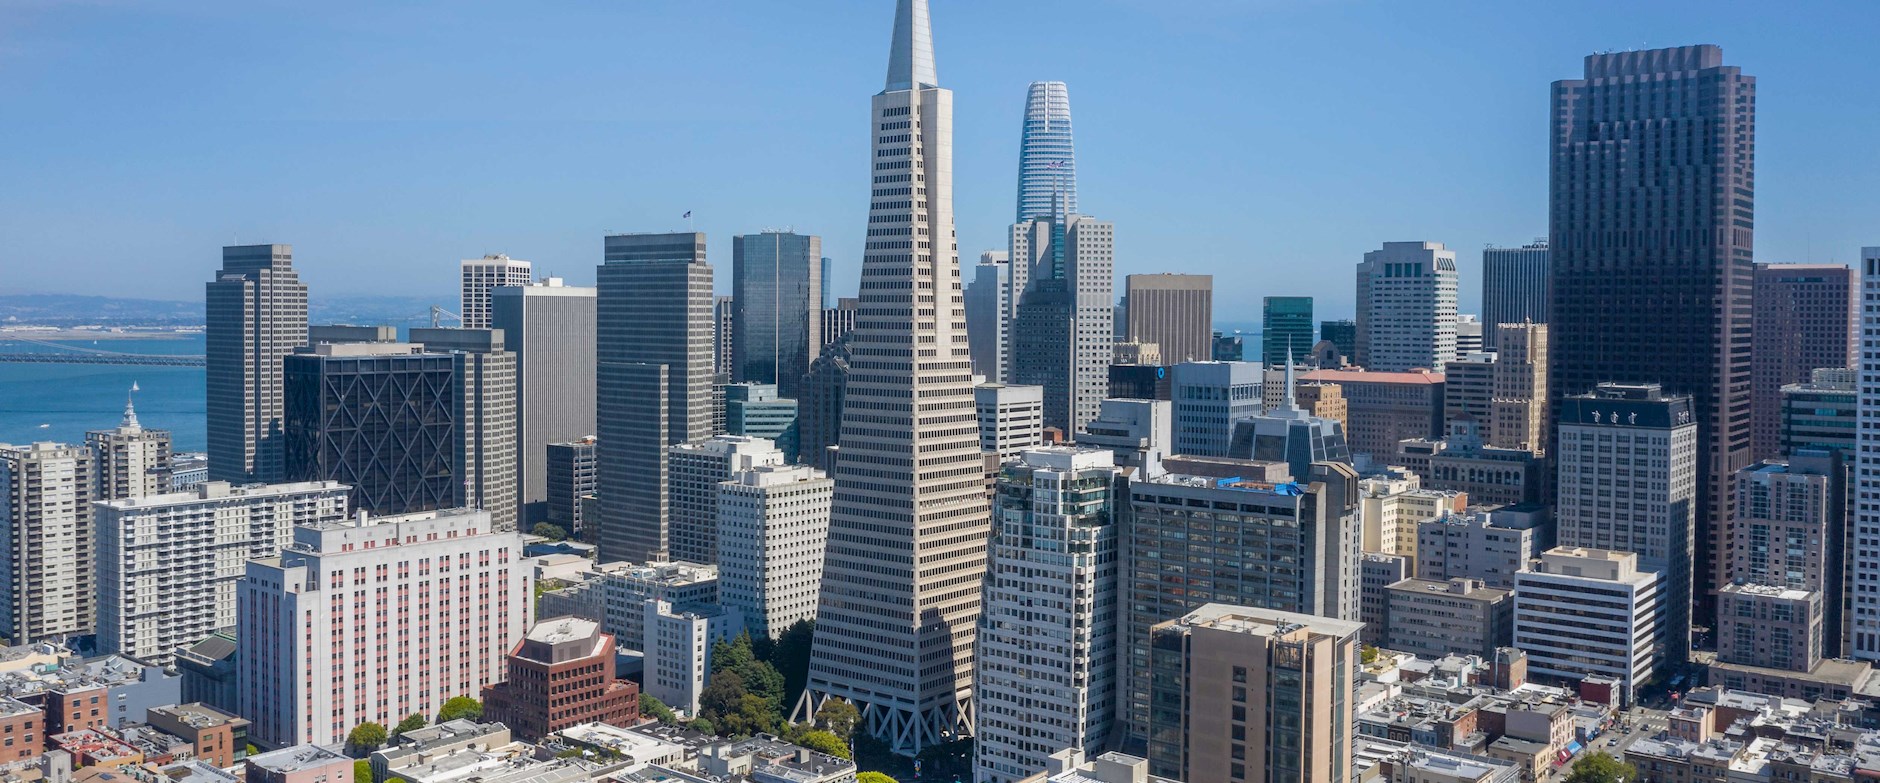 San Francisco financial district